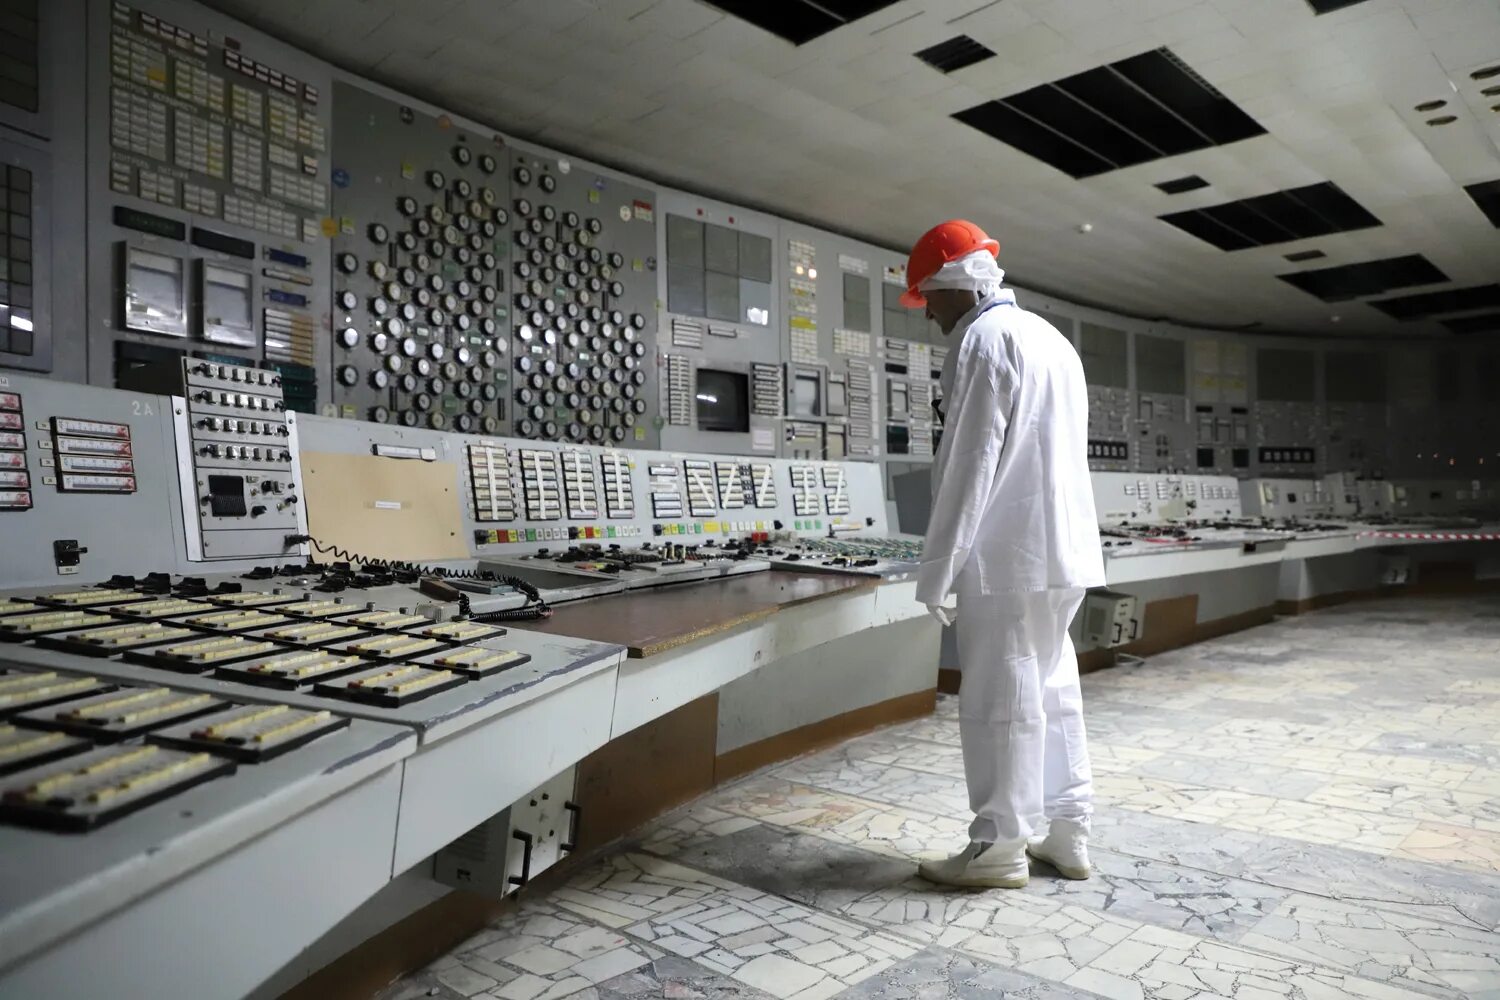 Chernobyl nuclear. Реактор Чернобыльской АЭС. 4 Энергоблок ЧАЭС. АЭС Припять 4 энергоблок. Реактор 4 энергоблока ЧАЭС.